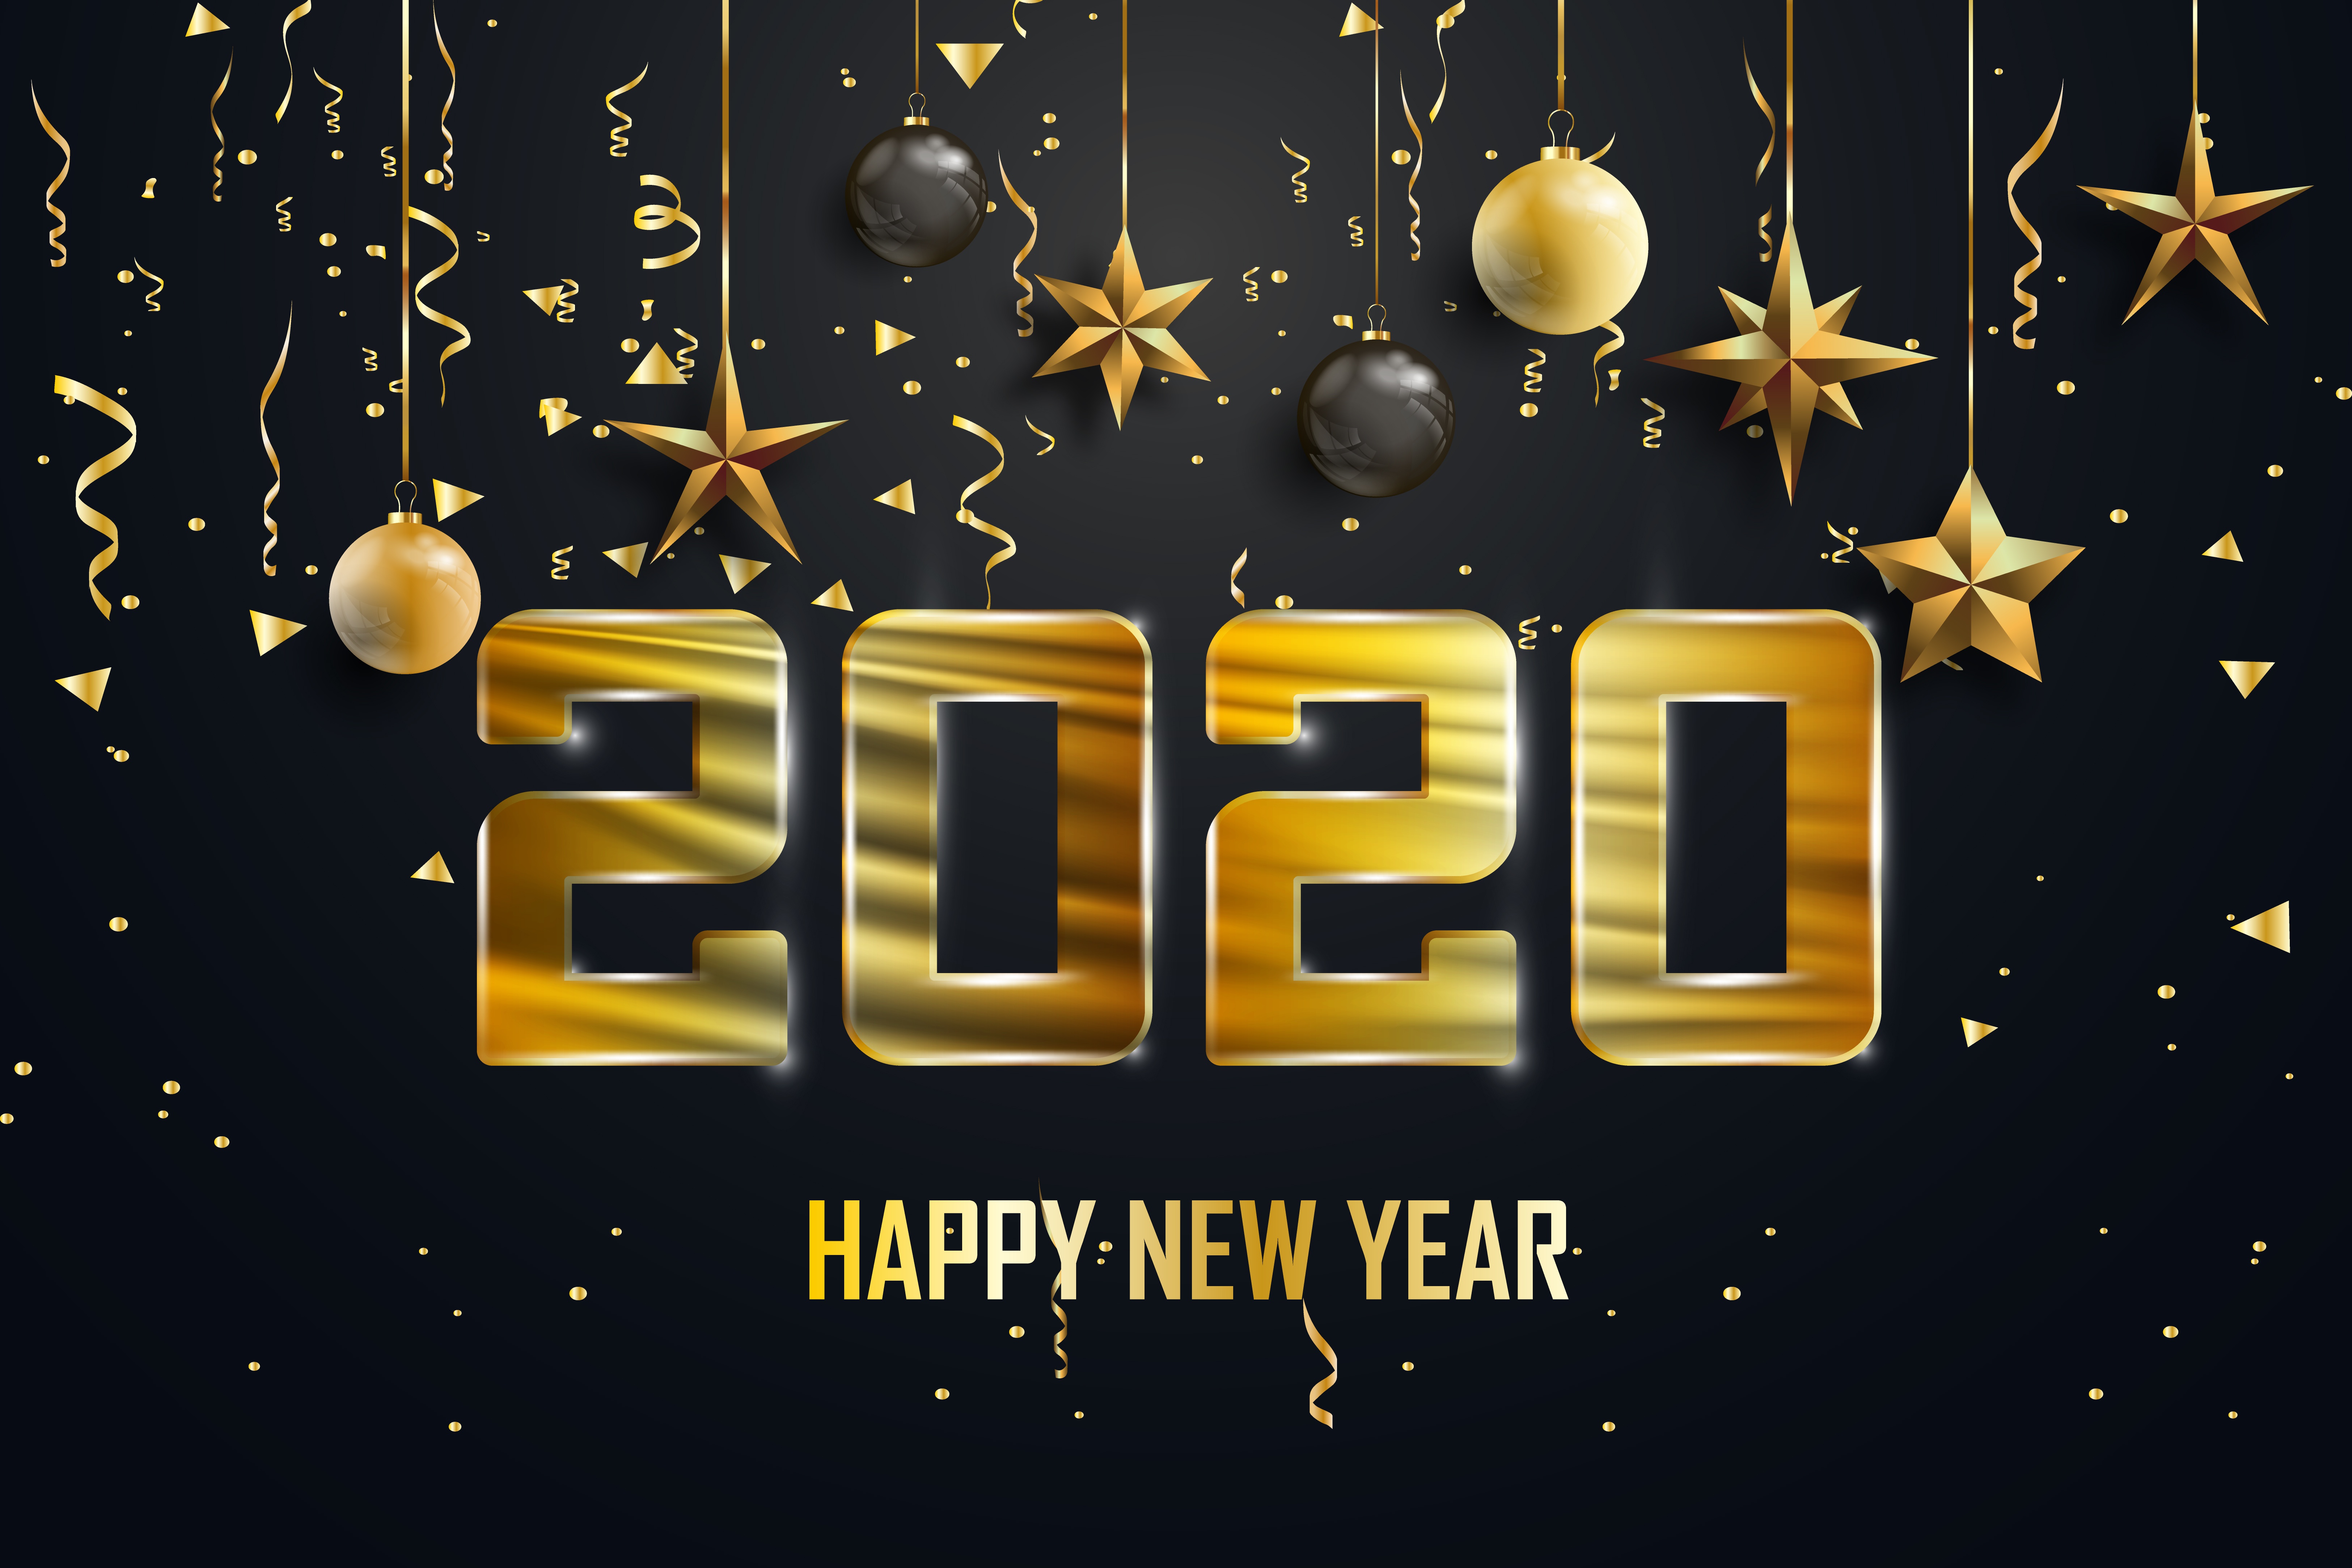 Lock Screen New Year 2020